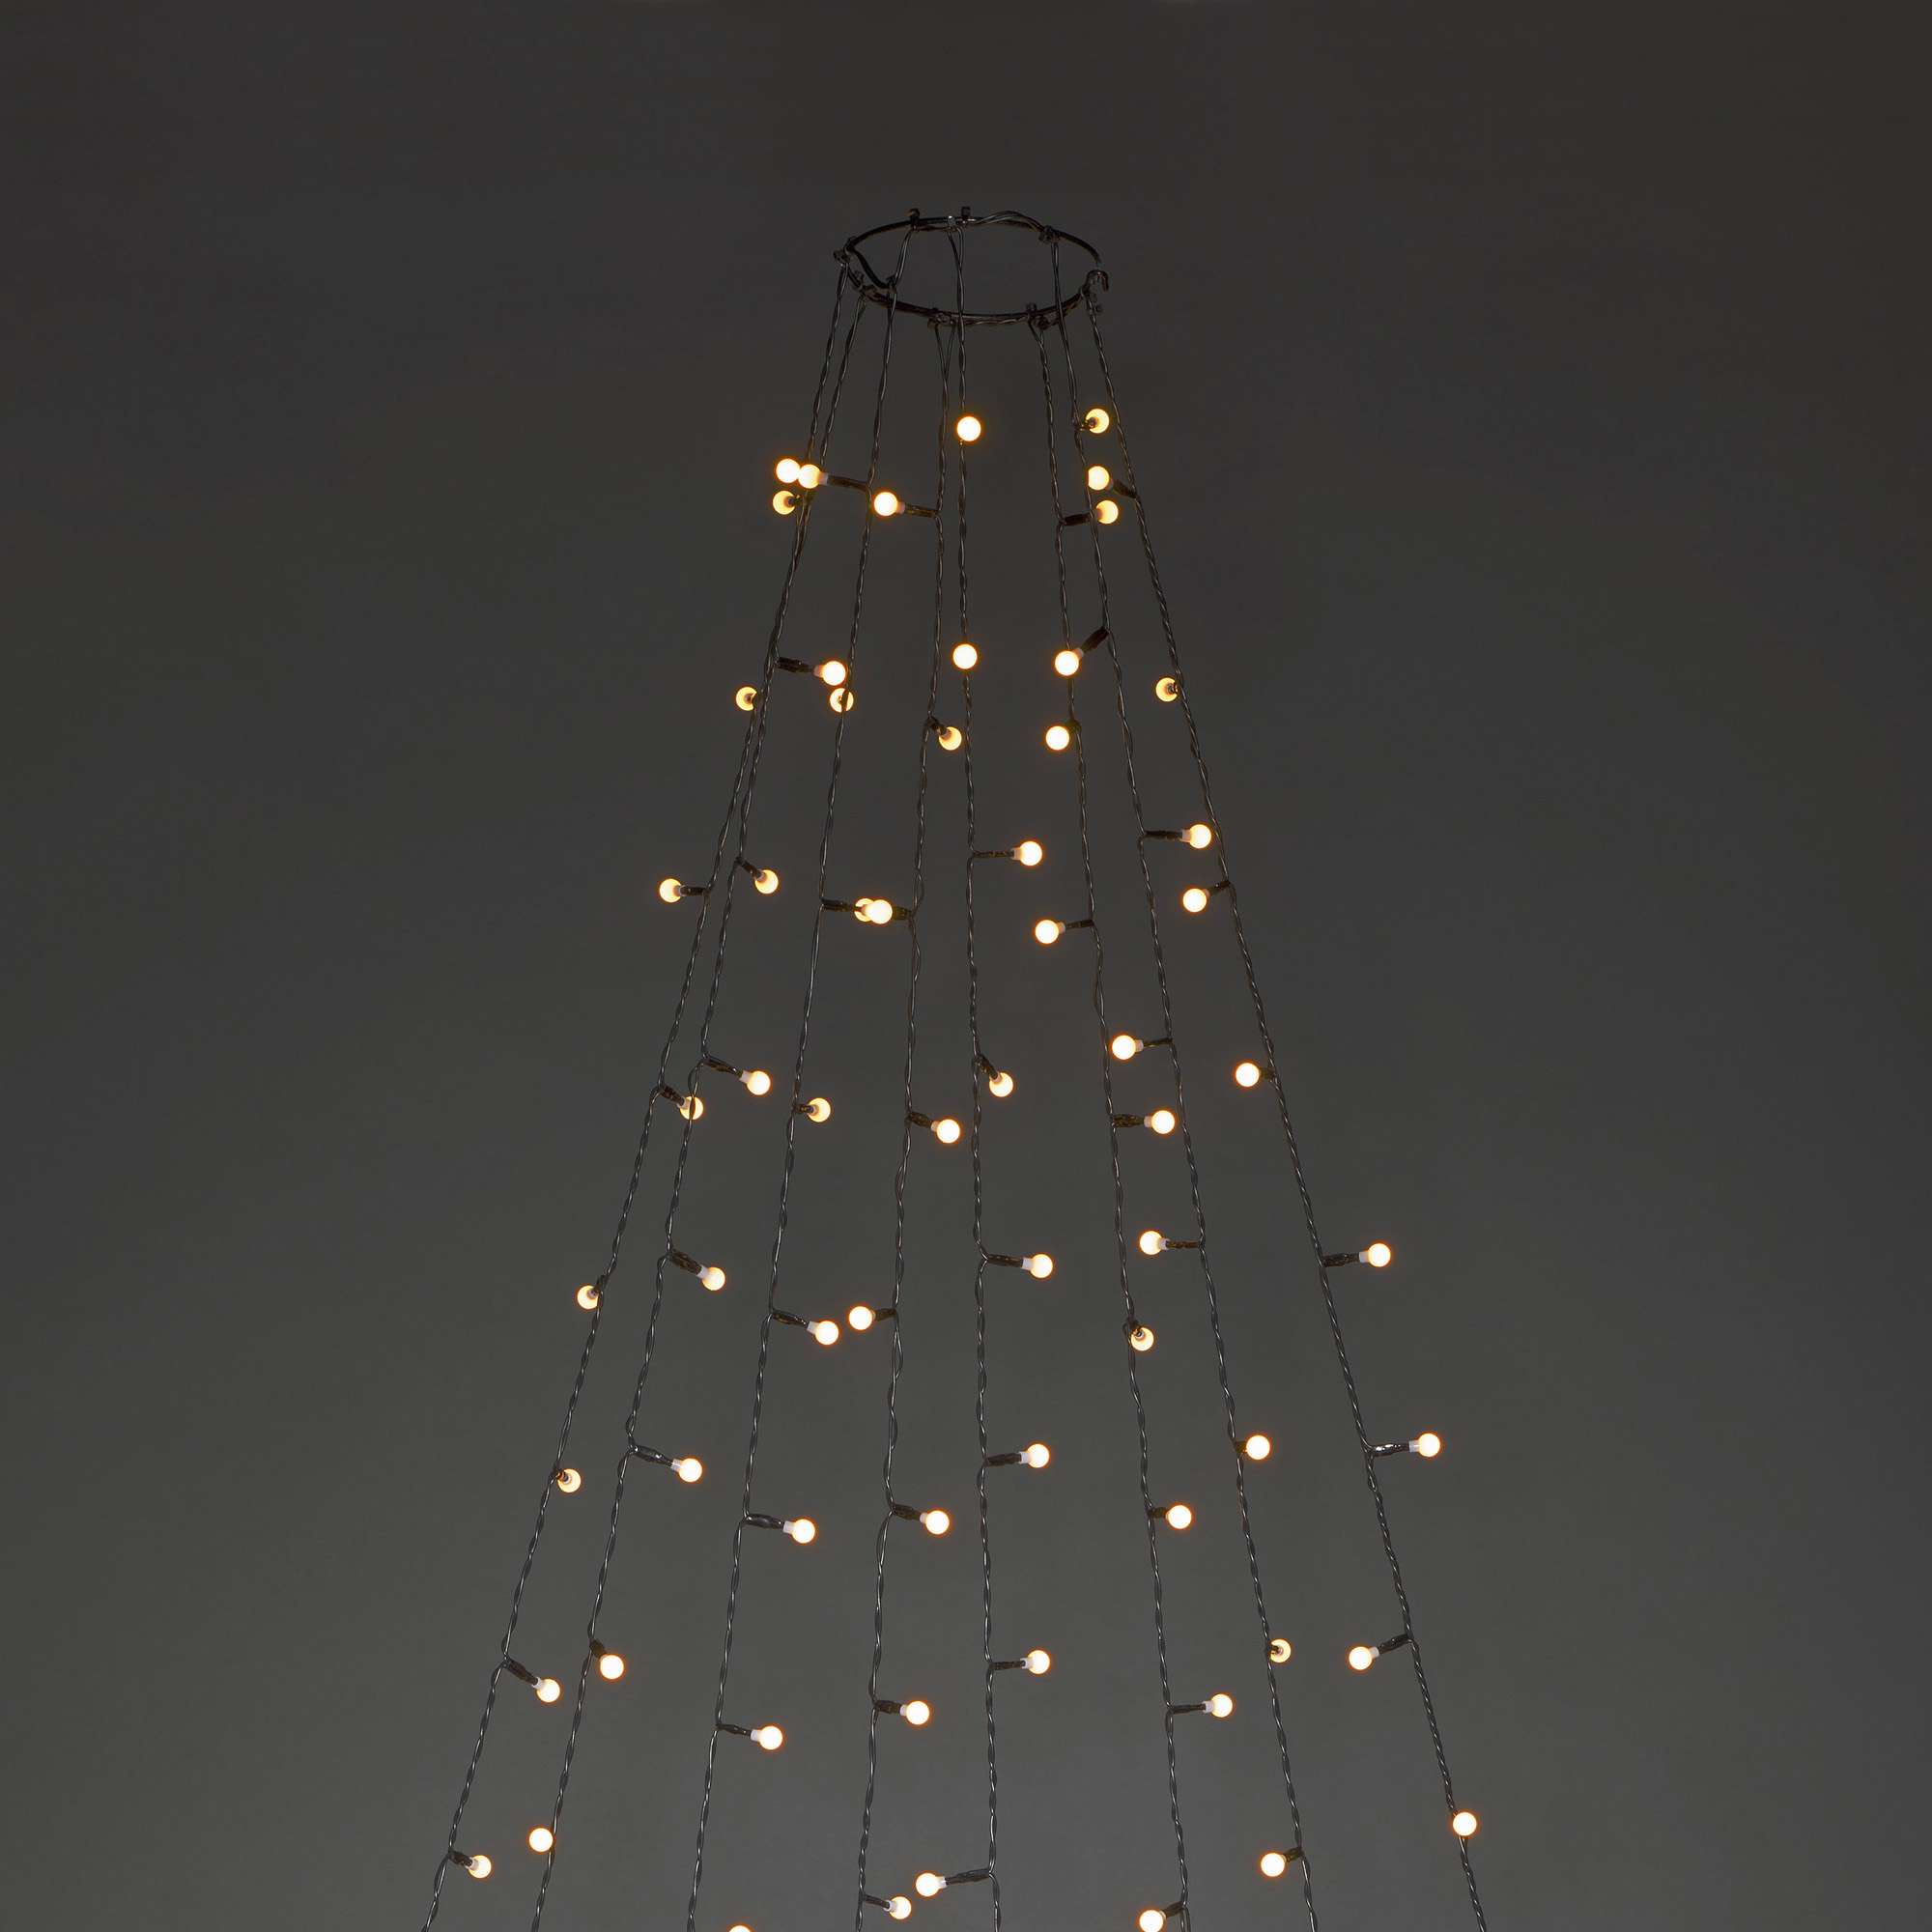 LED Tree Coat amber, 8 strings of 2.4m (30 LEDs each)